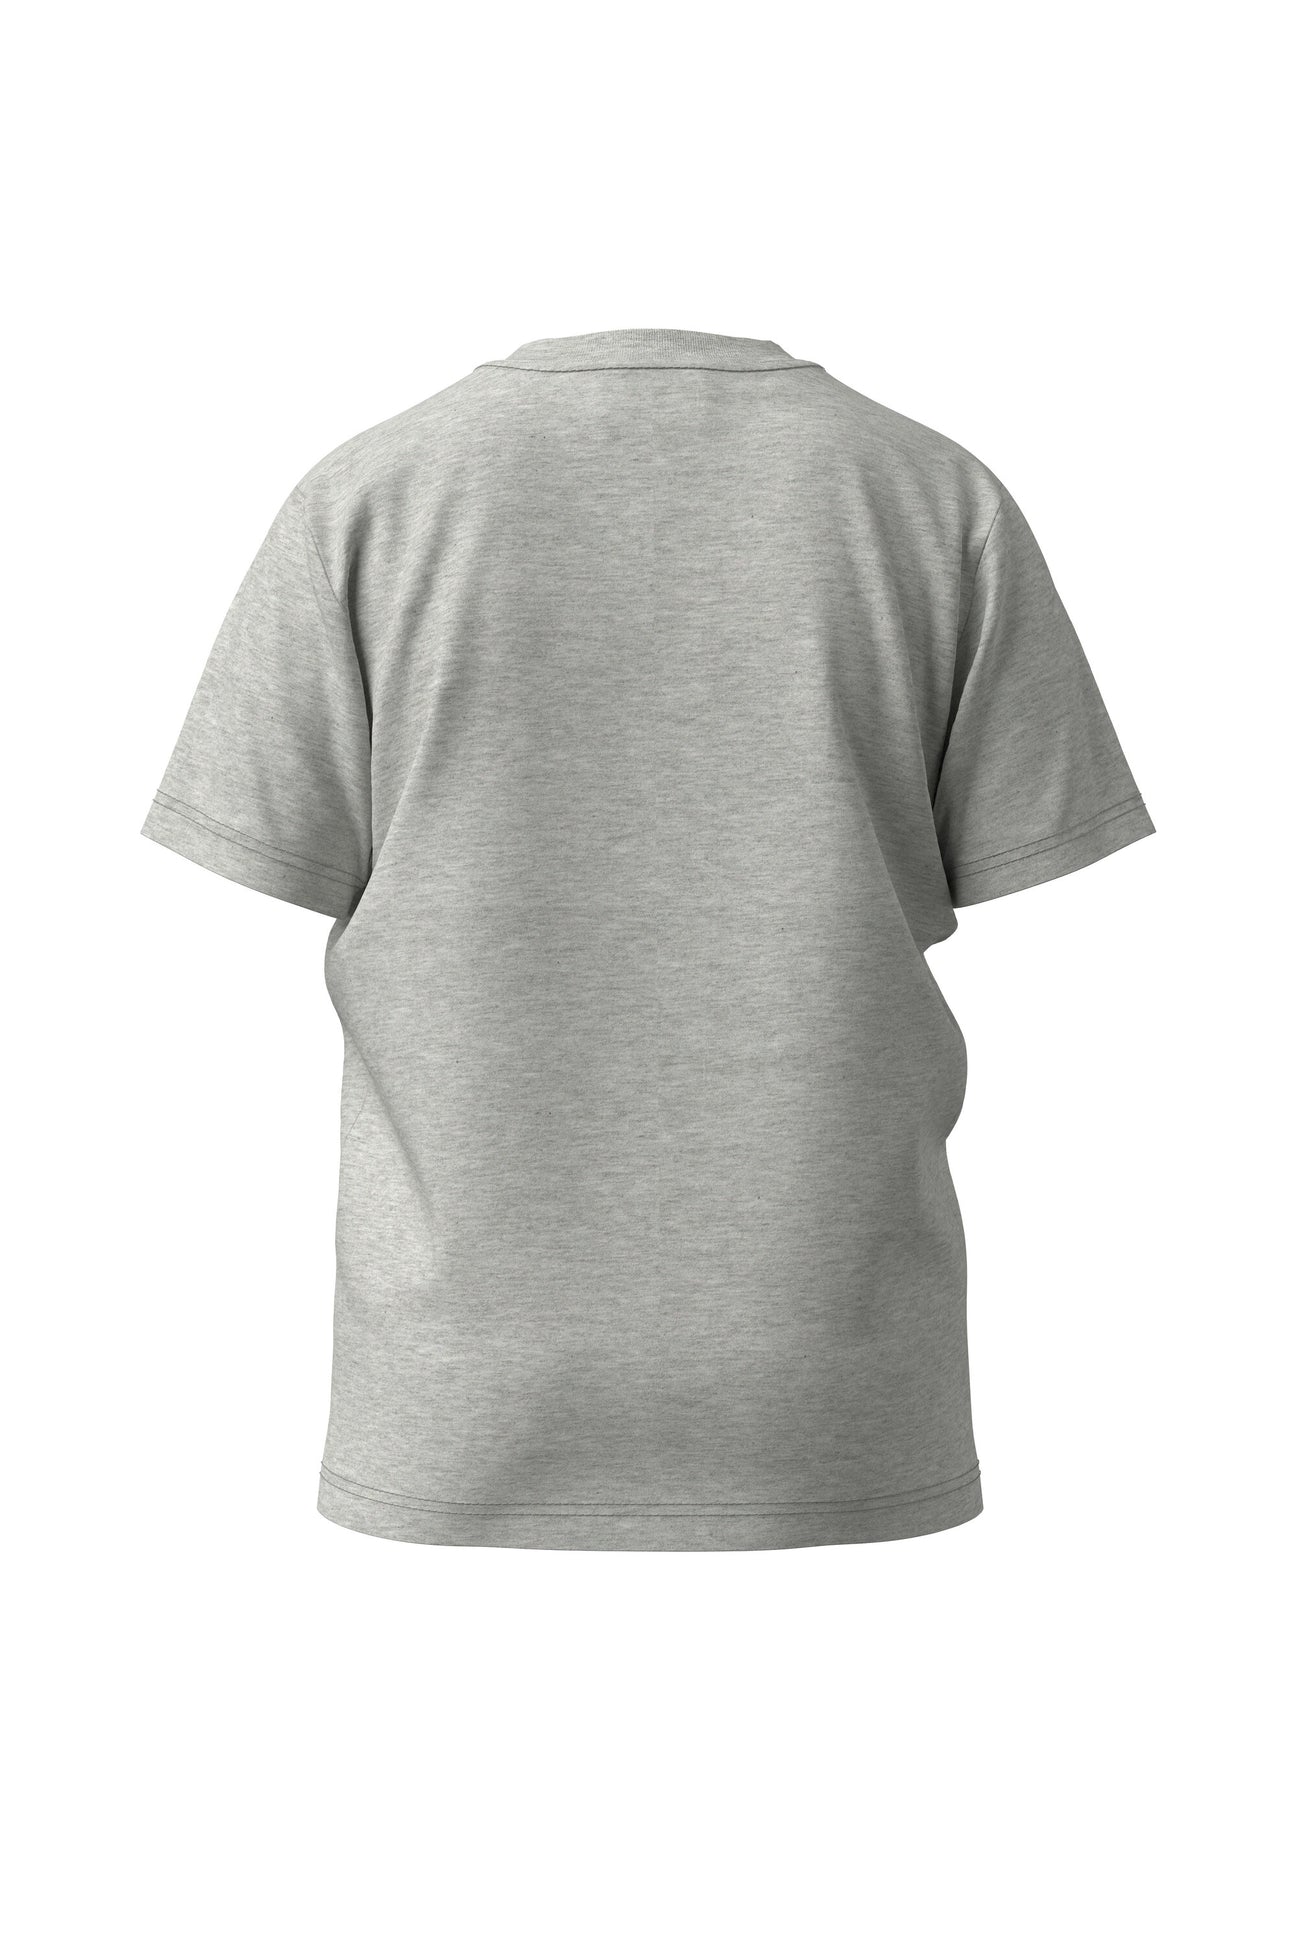 Camiseta gris de ropa interior de jersey con logotipo Camiseta gris de ropa interior de jersey con logotipo